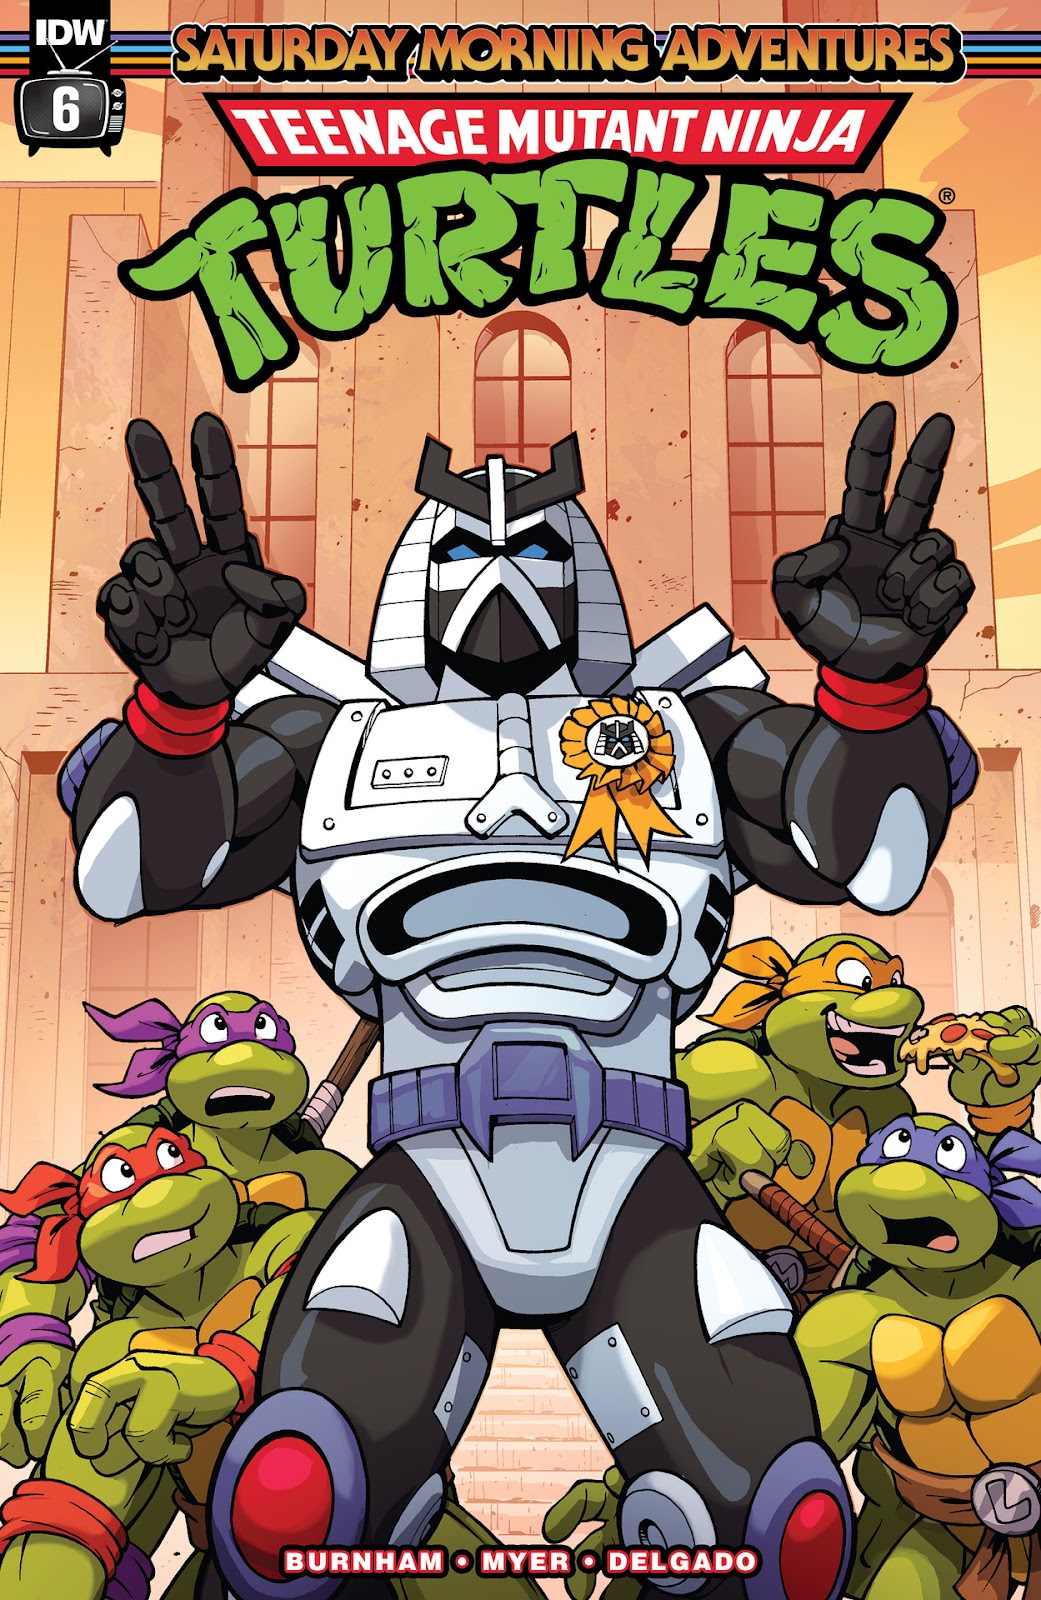 Teenage Mutant Ninja Turtles: Saturday Morning Adventures Continued issue 6 - Page 1